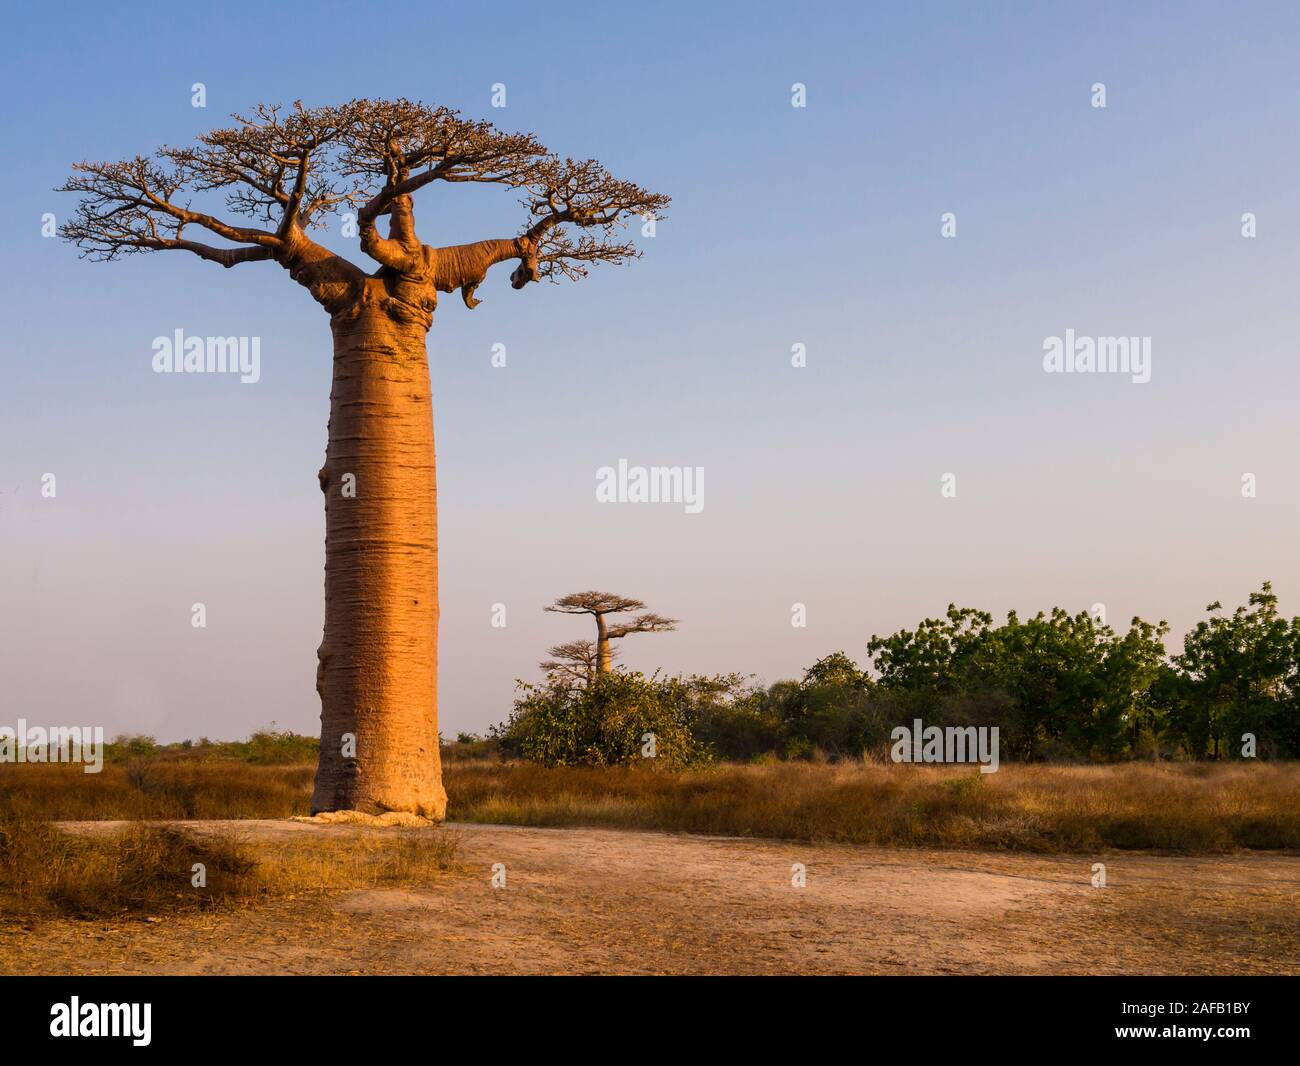 African landscape with majestic baobab tree, Morondava, Madagascar Stock Photo